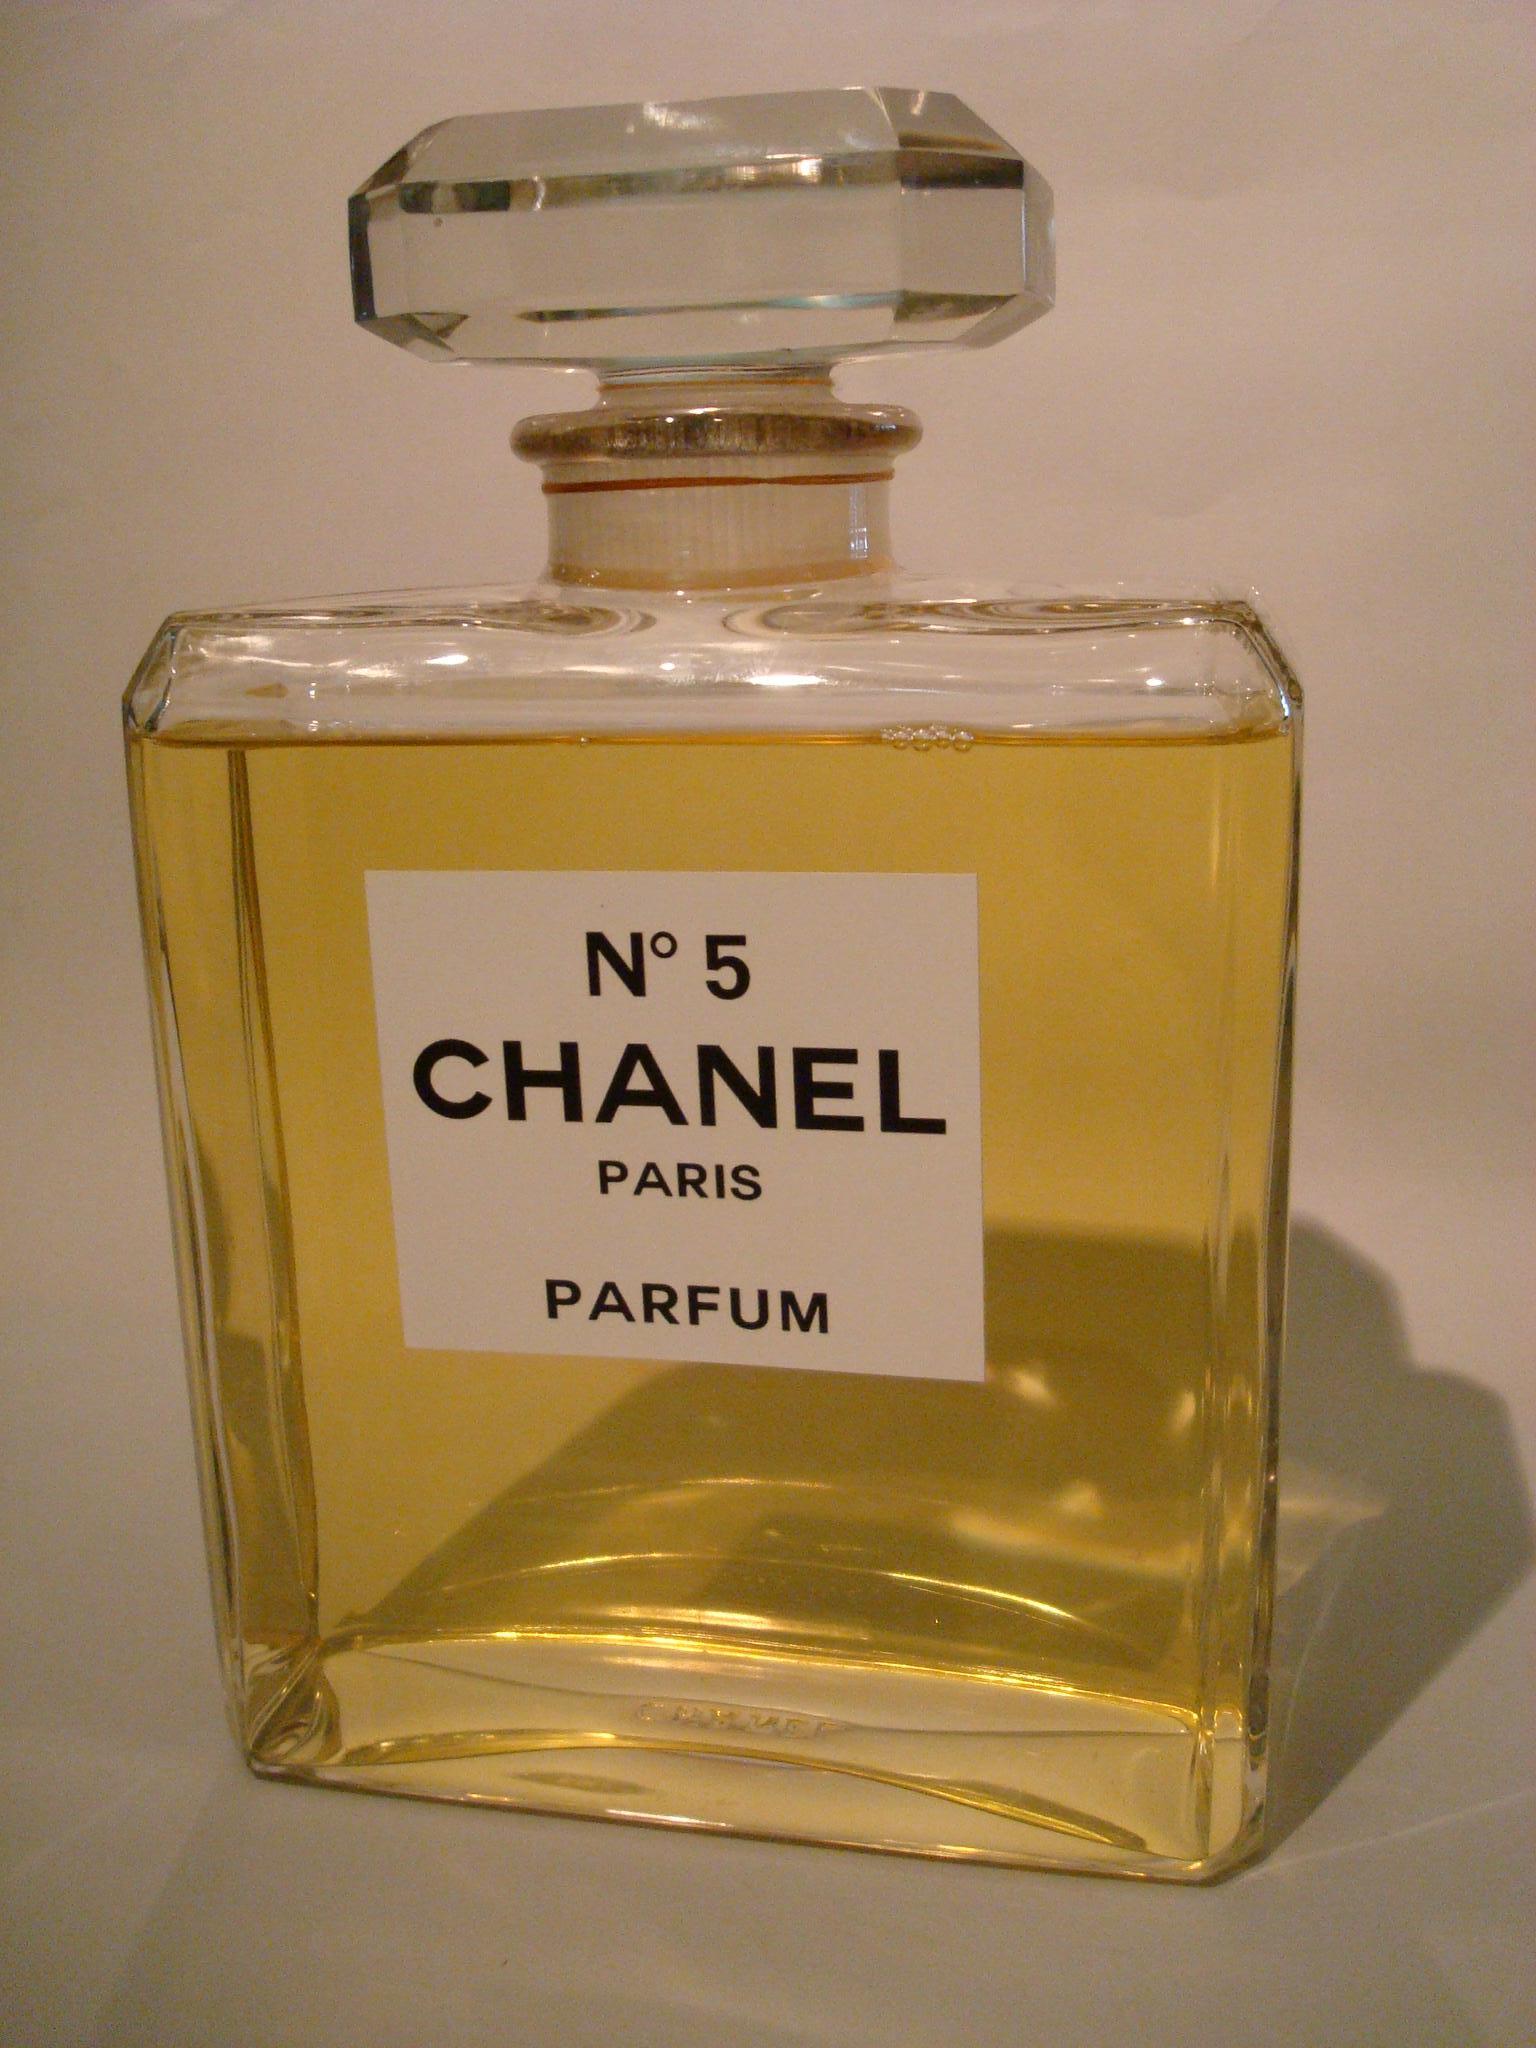 giant chanel perfume bottle